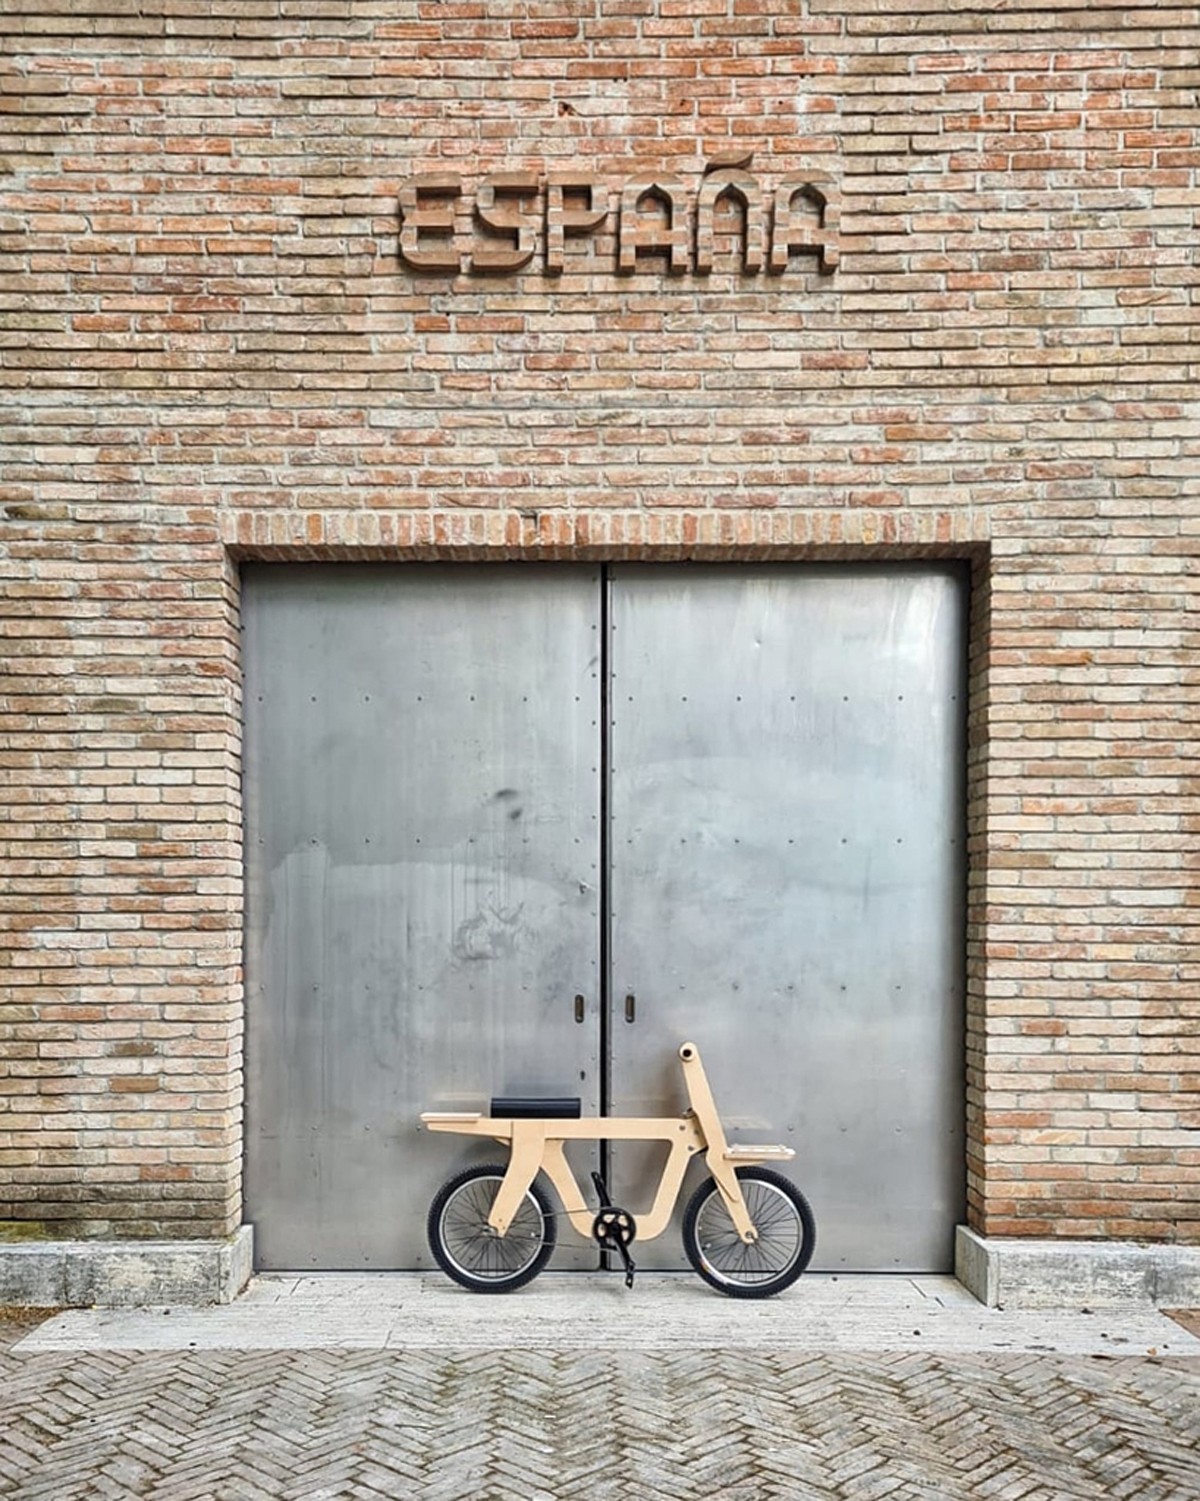 Estúdio espanhol cria bicicleta de madeira que pode ser construída por qualquer pessoa (Foto: Arquimaña)